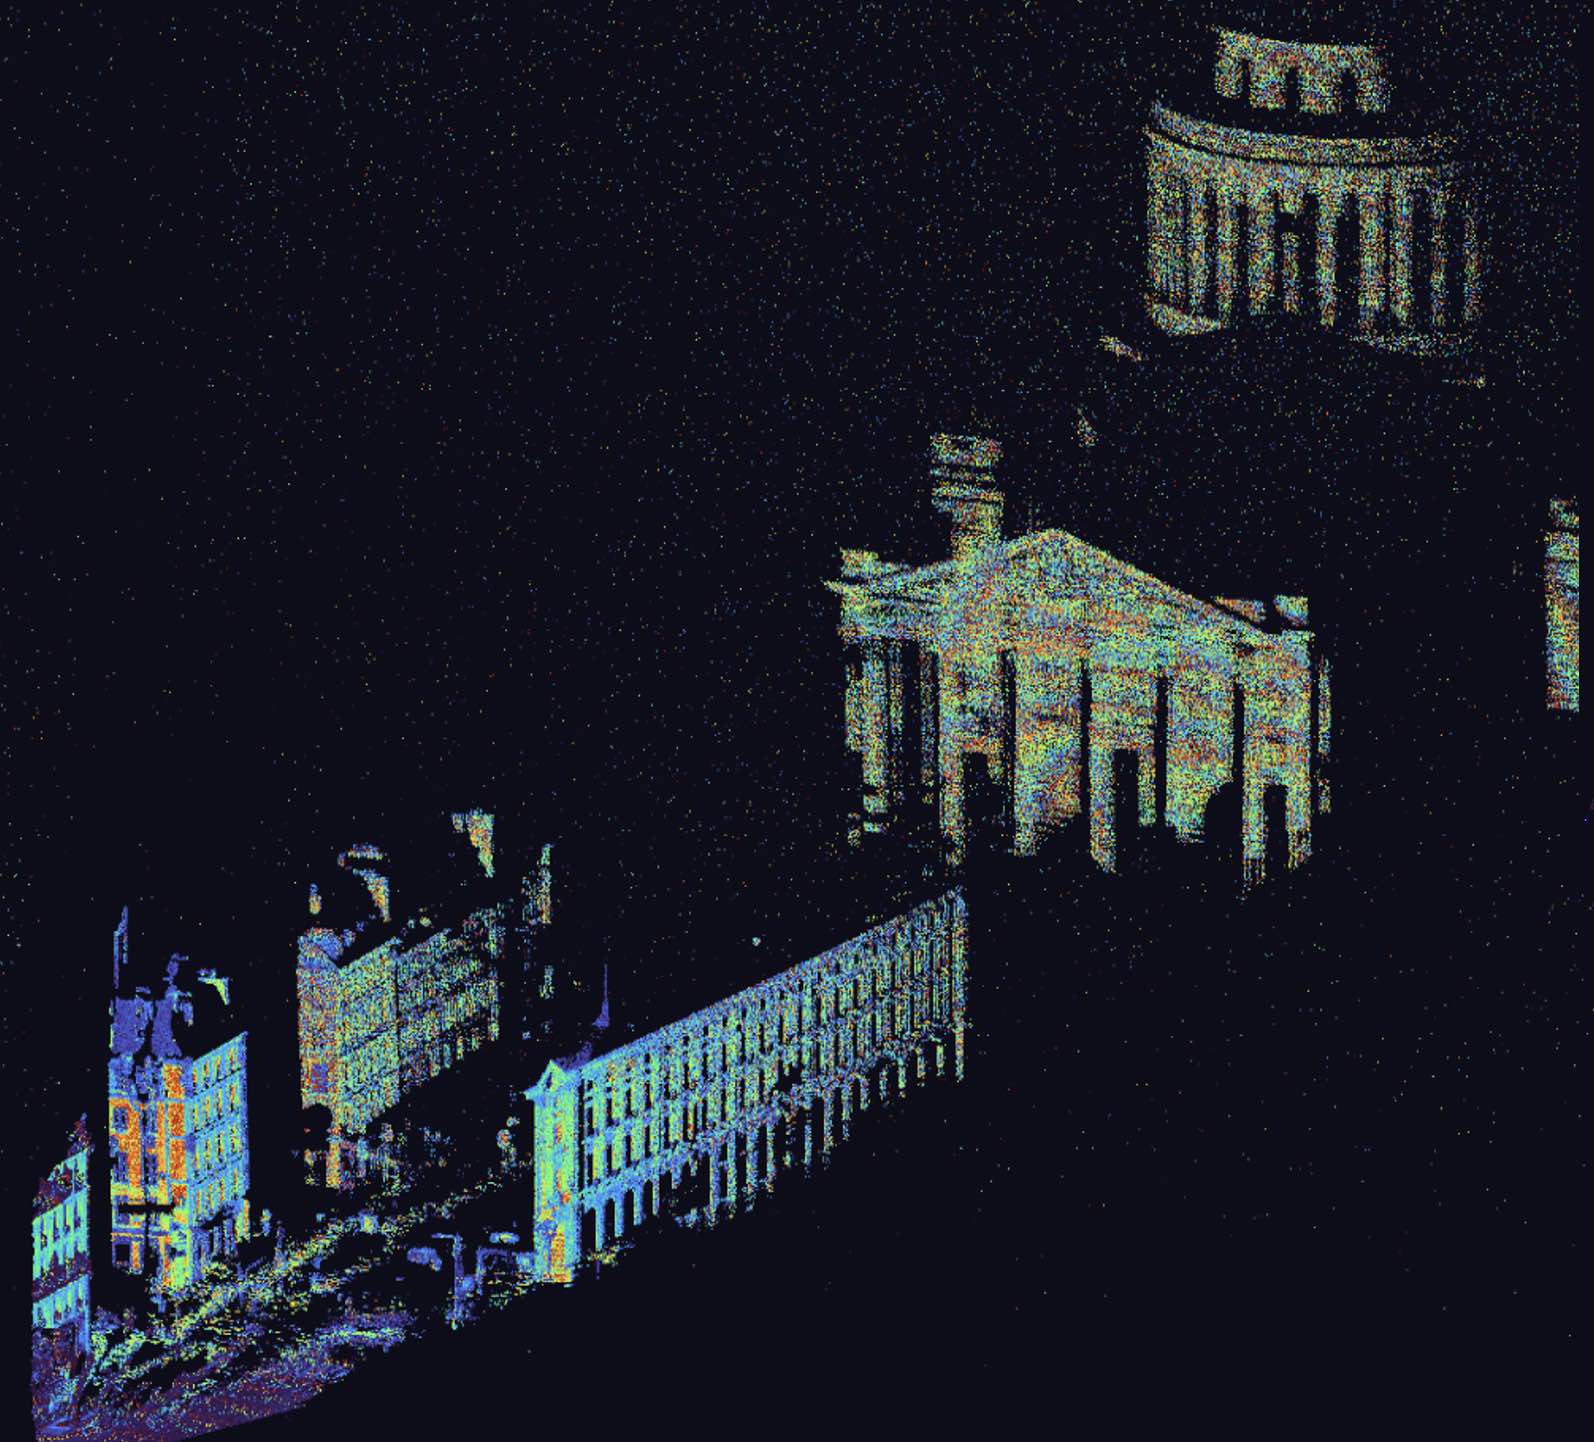 Iridesense Multispectral Lidar 3D view of Paris Pantheon